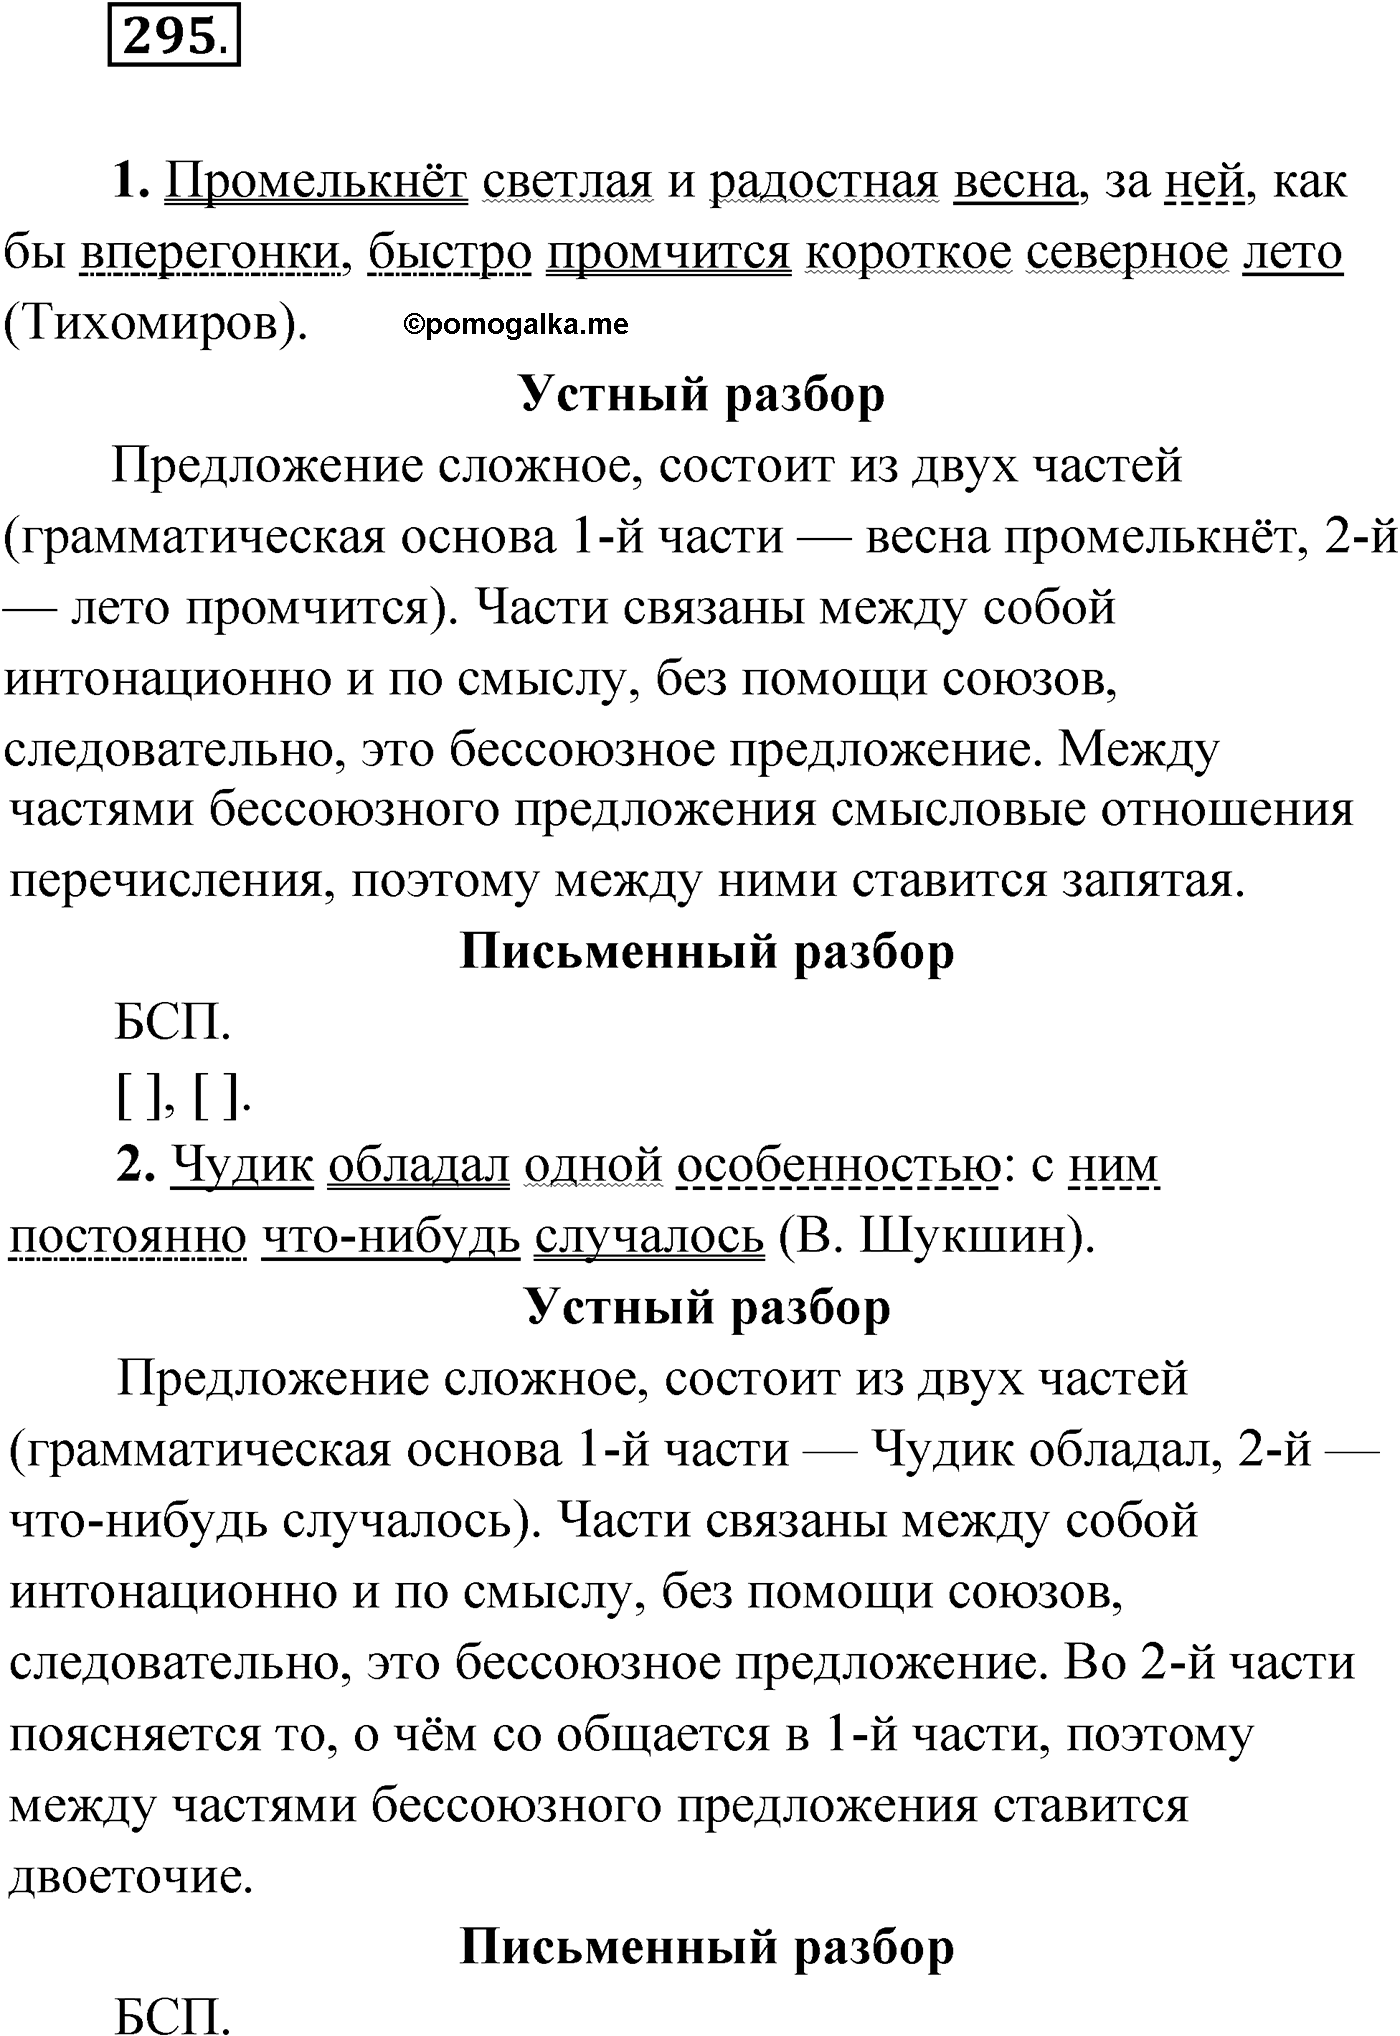 упражнение №295 русский язык 9 класс Мурина 2019 год